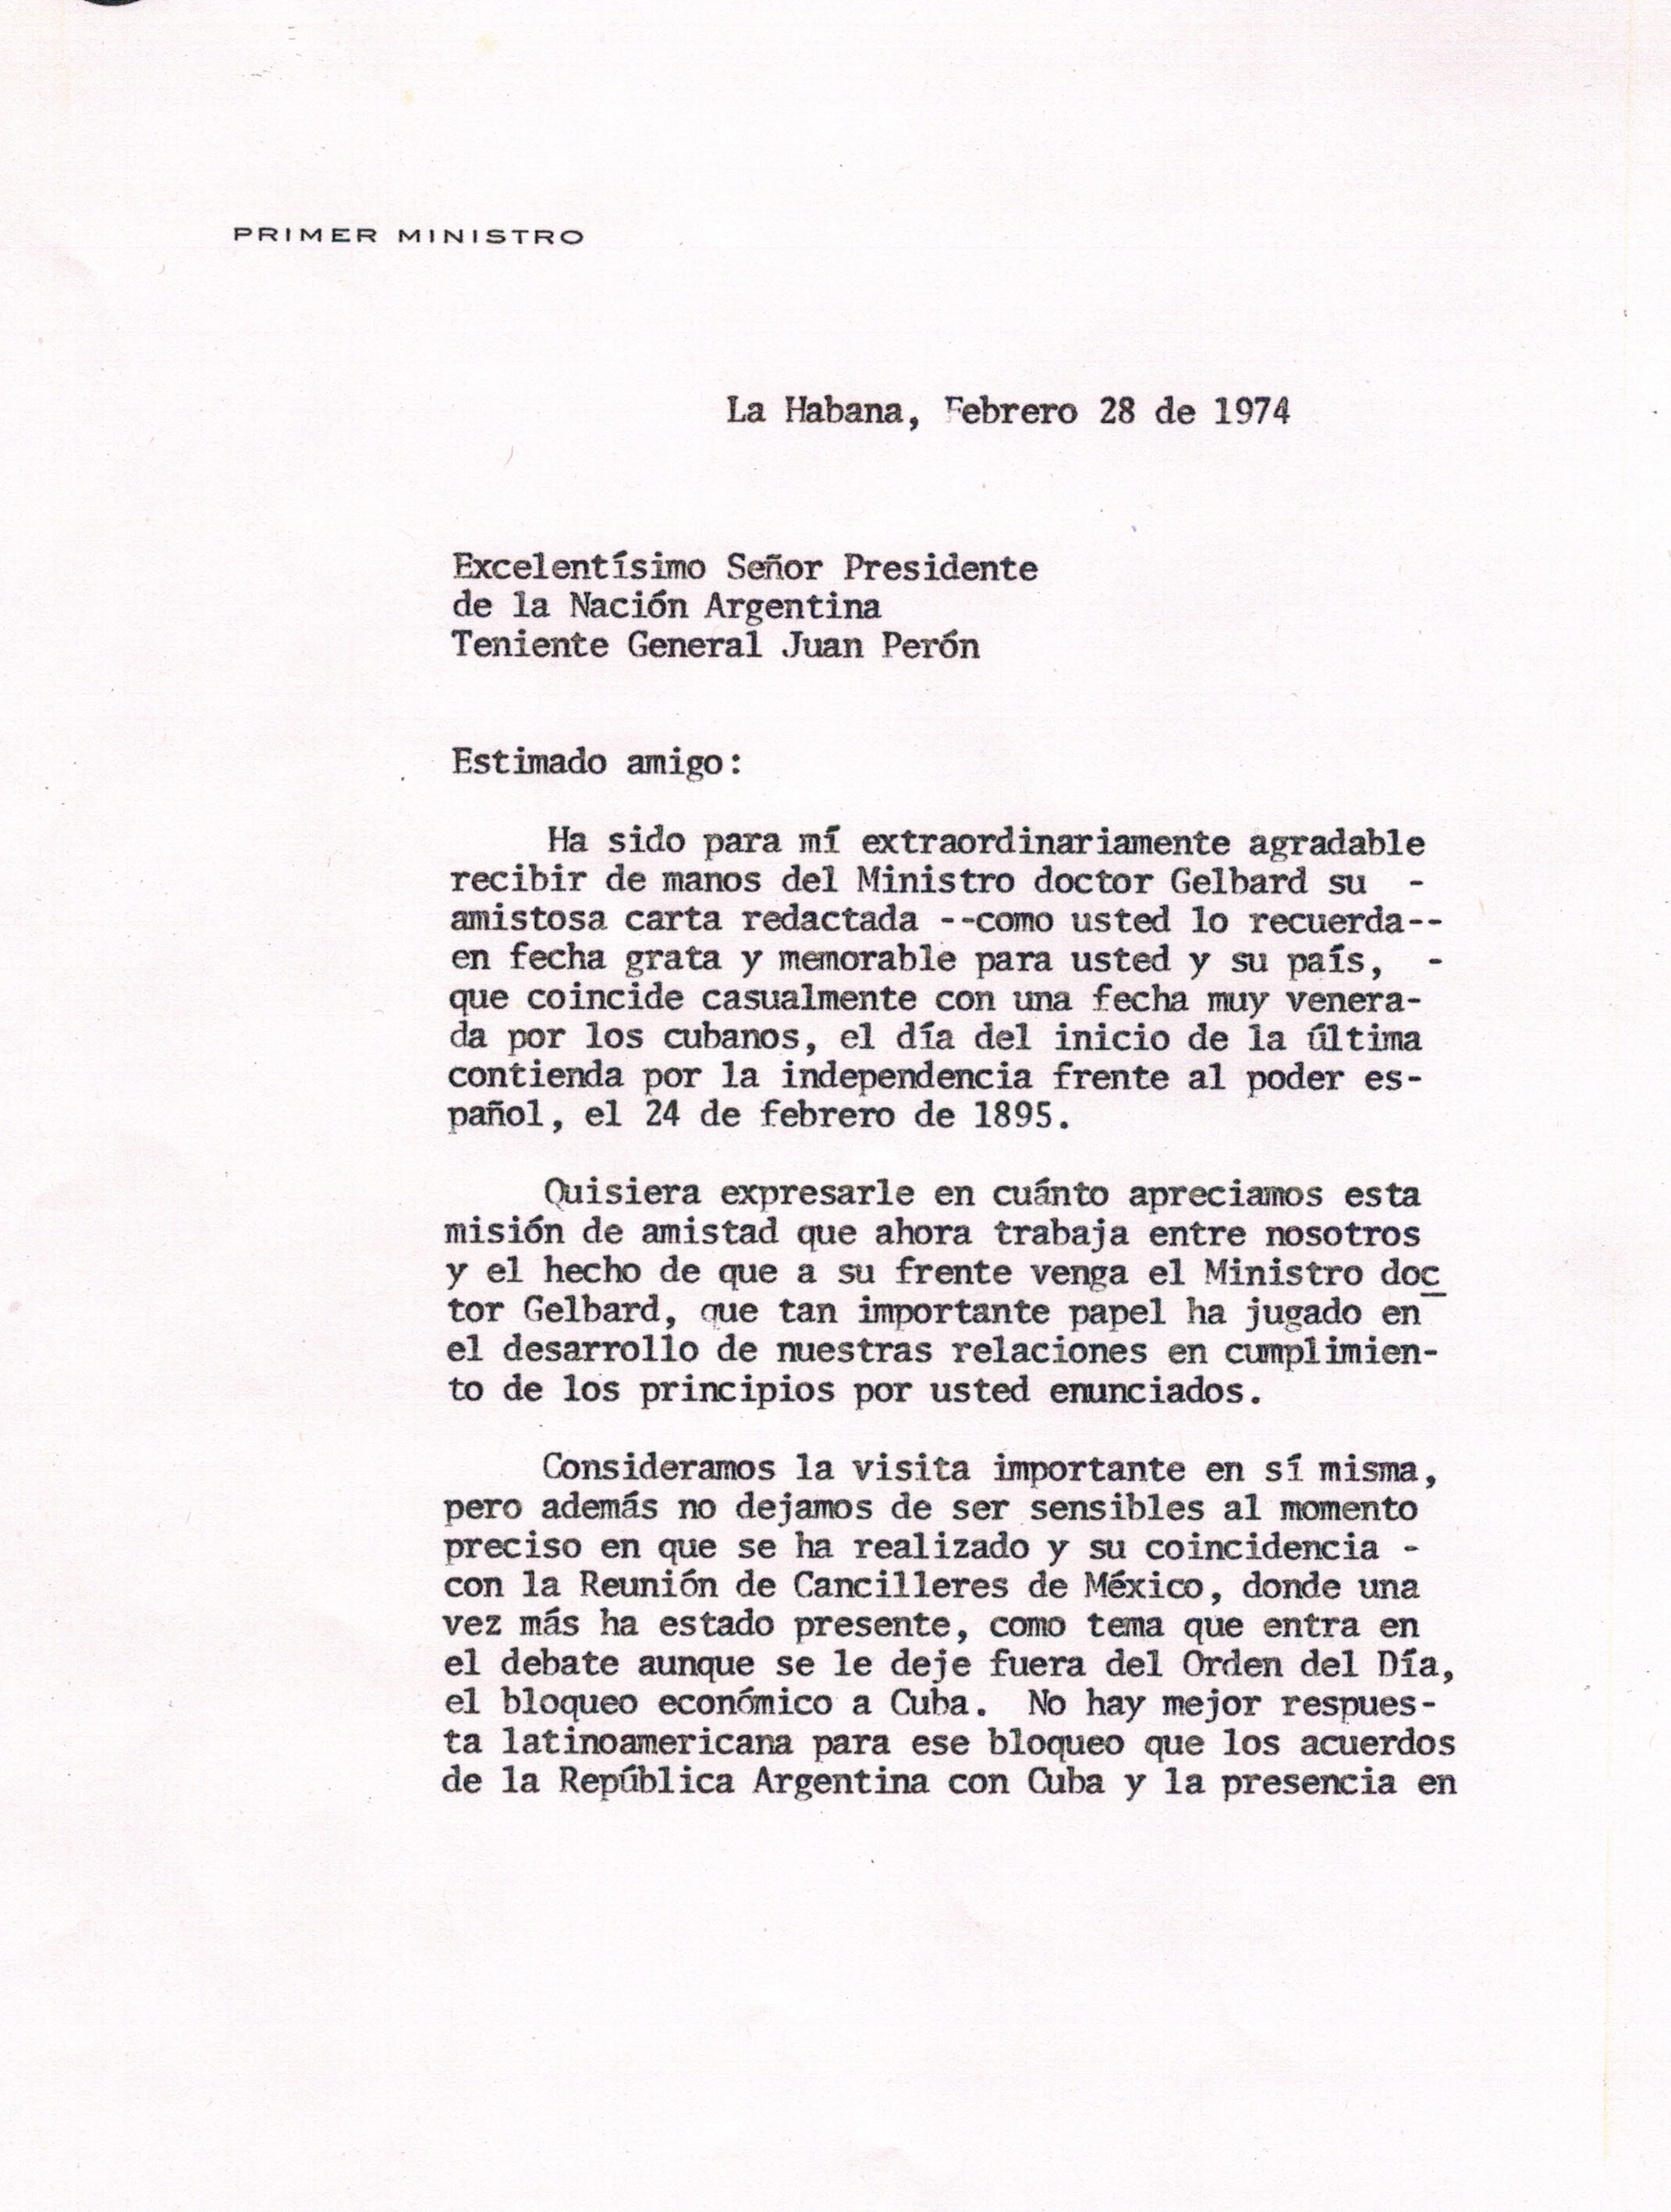 Carta de Fidel Castro a Perón